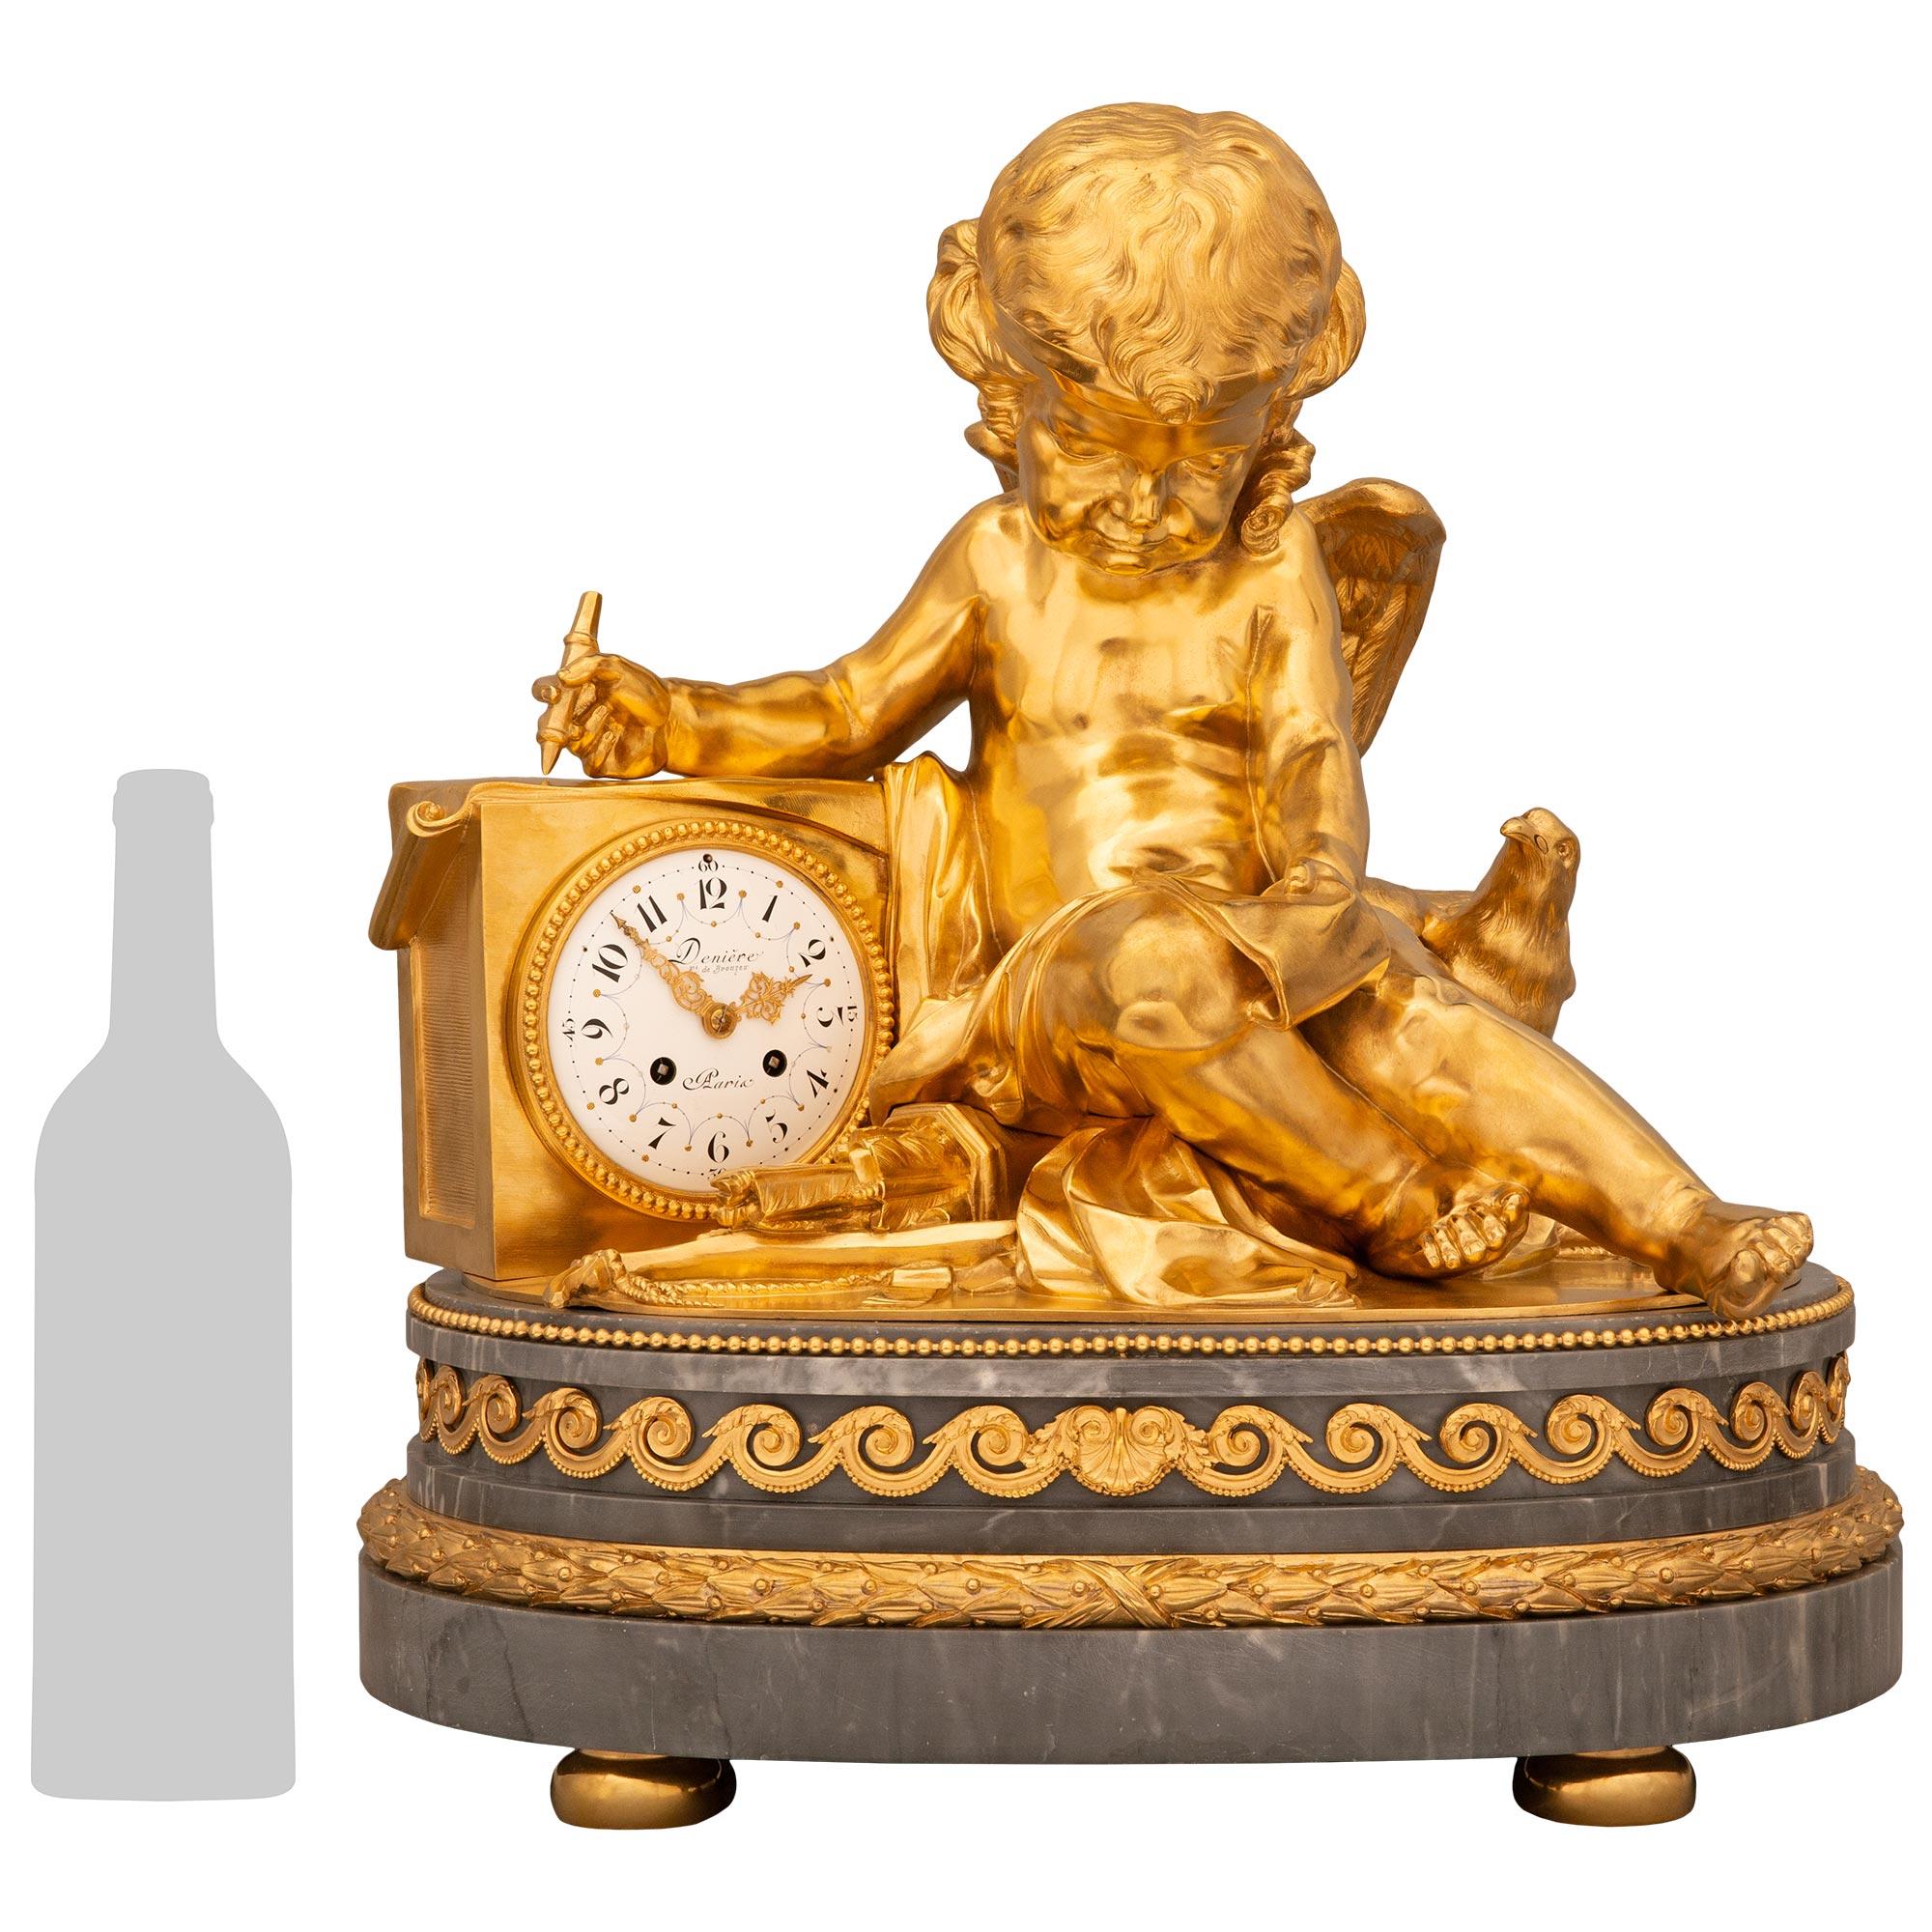 Impressionnante pendule en marbre et bronze doré de style Louis XVI du XIXe siècle, signée Derniere. Cette horloge exquise et de grande qualité repose sur un impressionnant piédestal en marbre gris tacheté de Sainte-Anne, soutenu par des pieds en